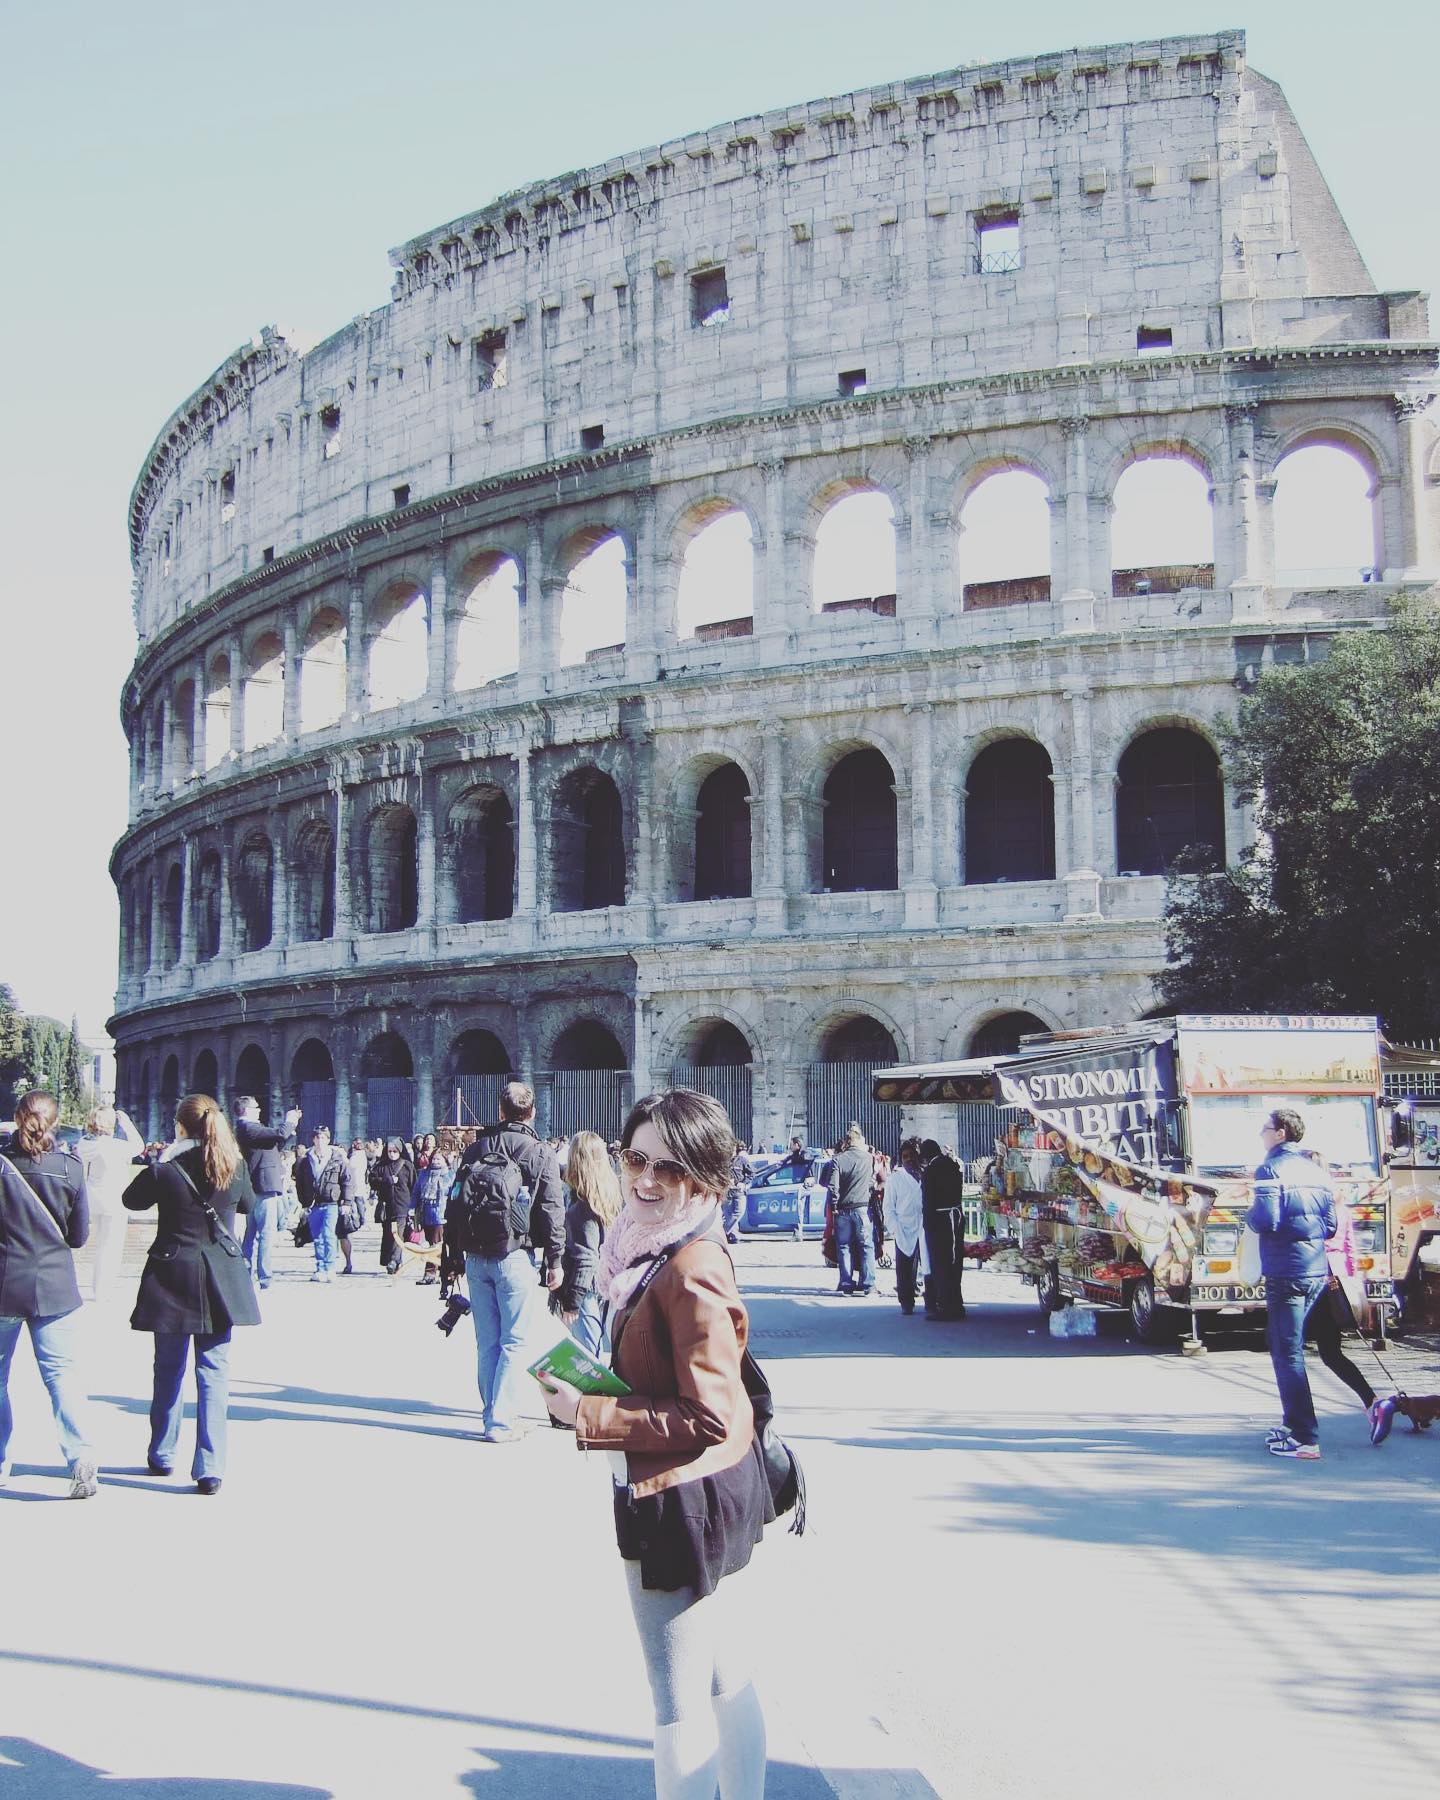 When in Rome... #tbt #italy #ladolcevita #rome #tourist #travel #collosseum